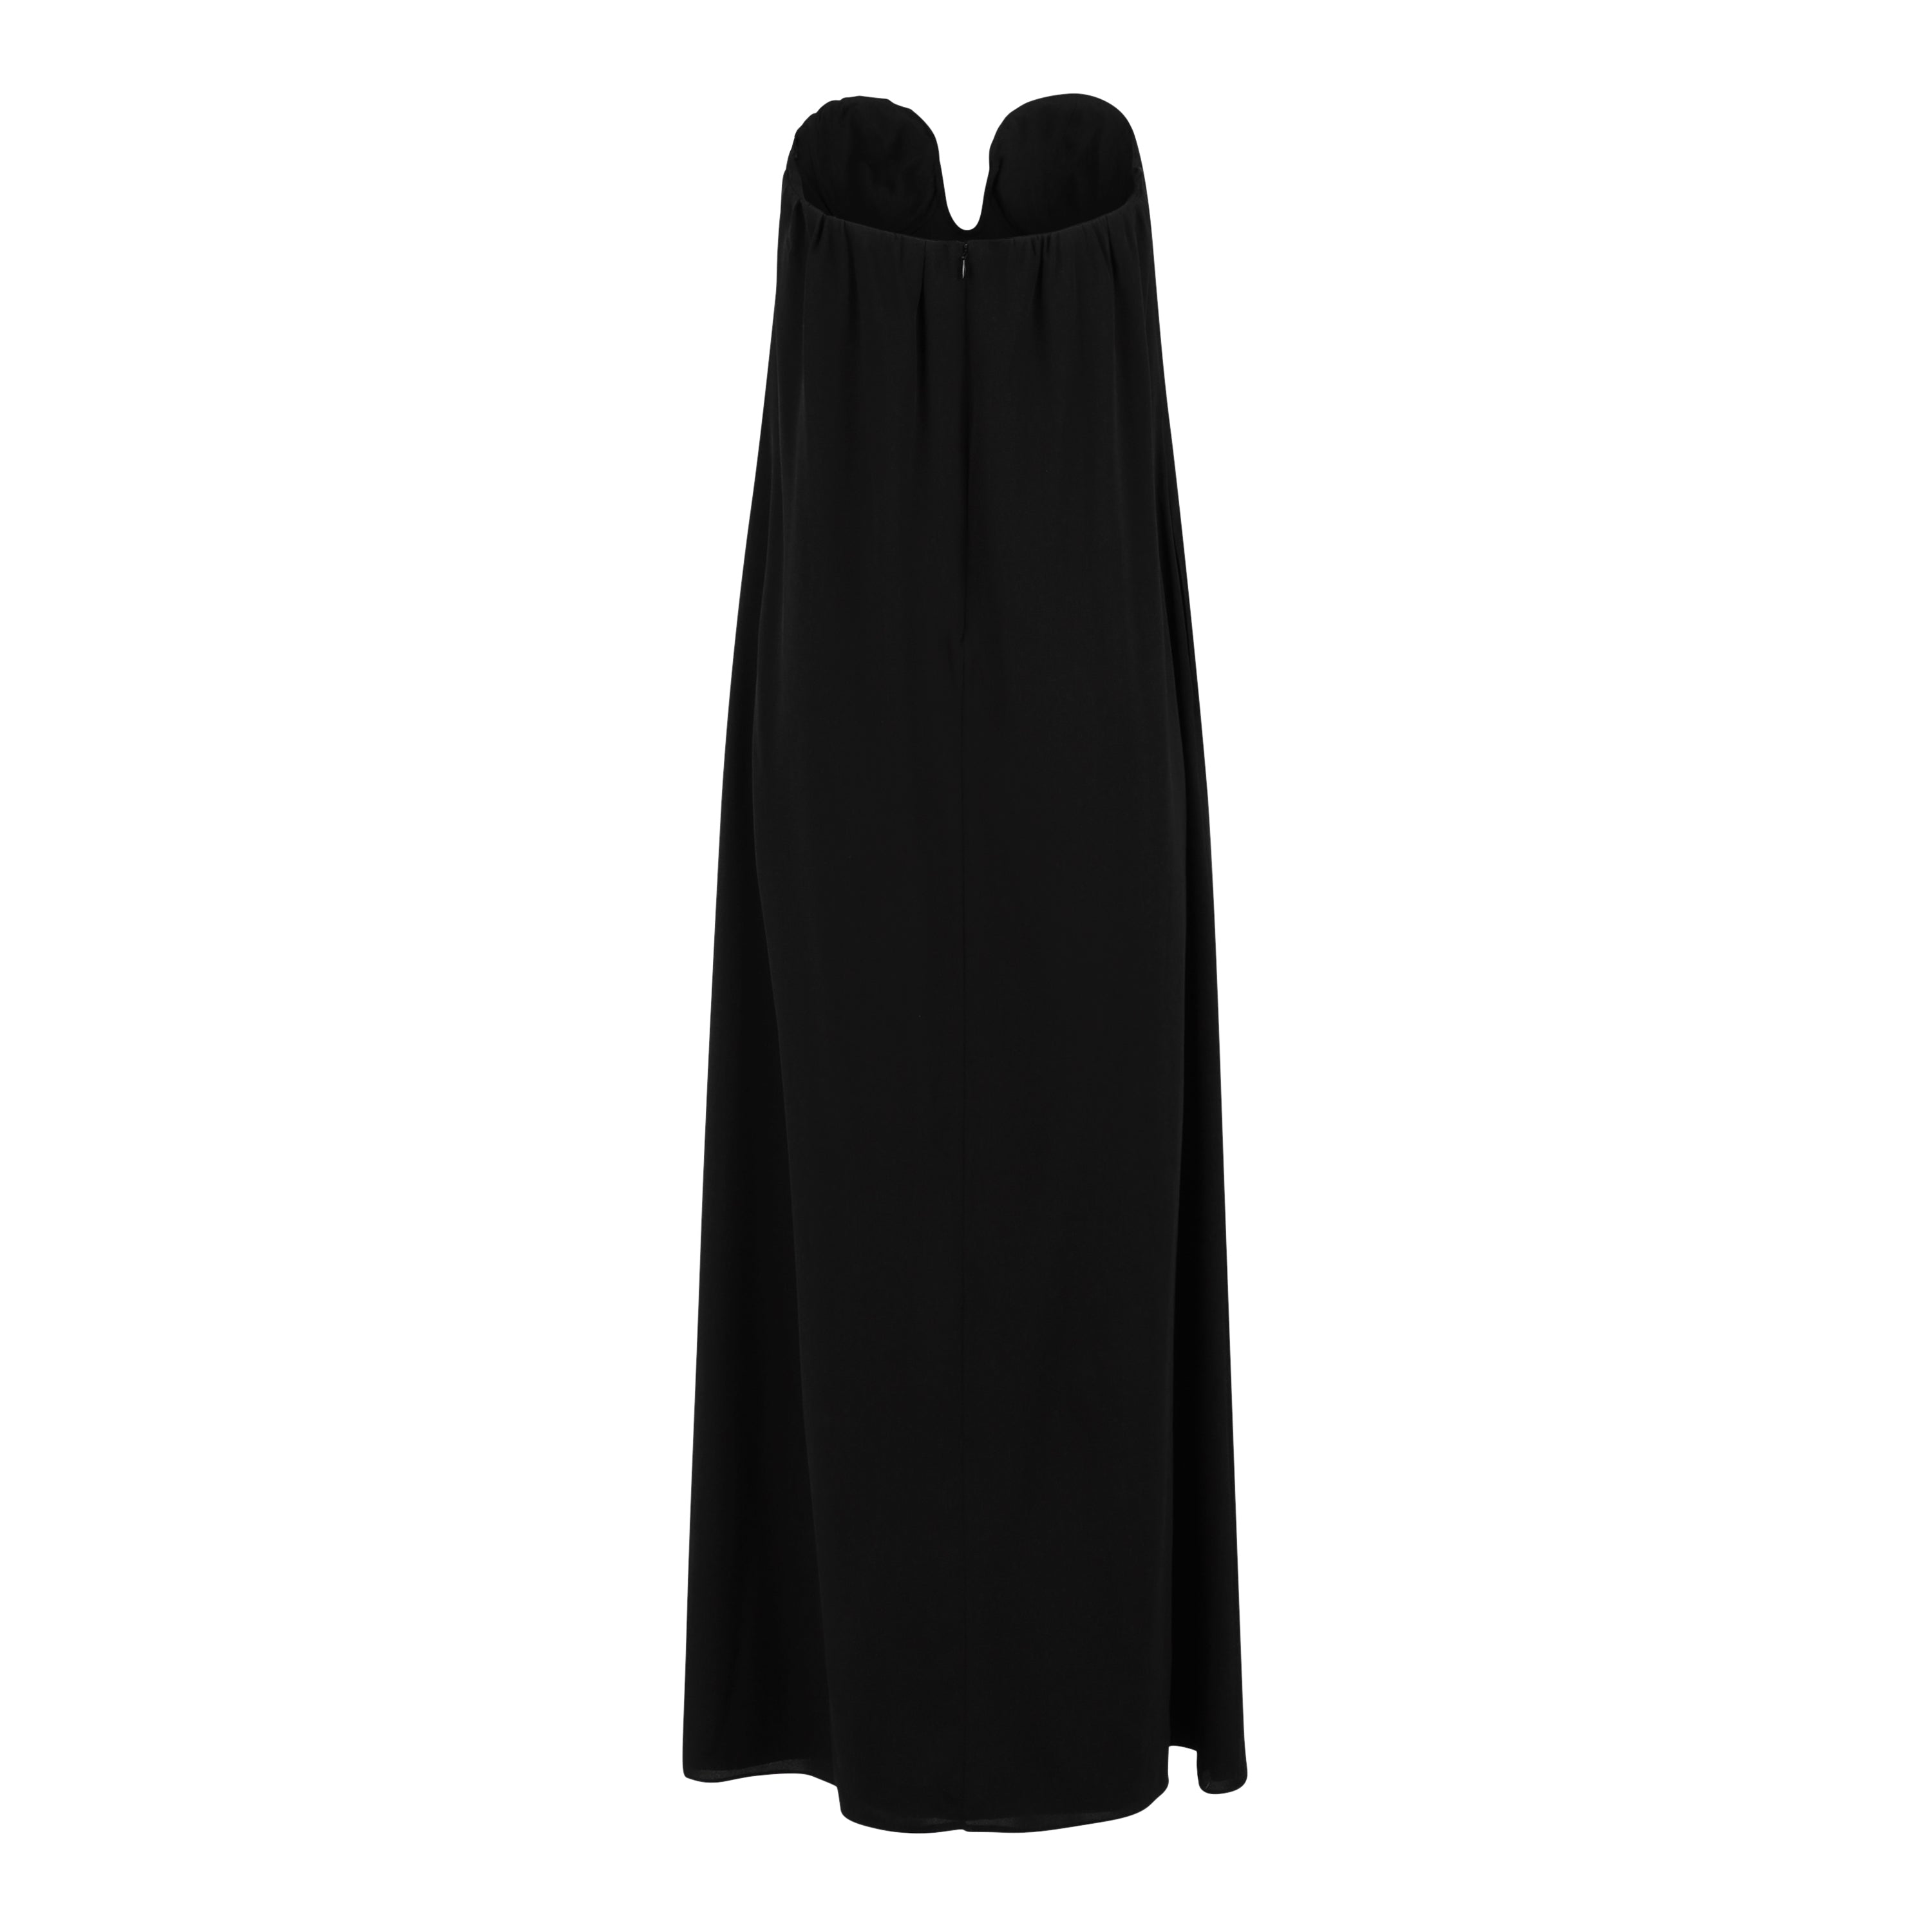 Black Strapless Hidden Corset Dress